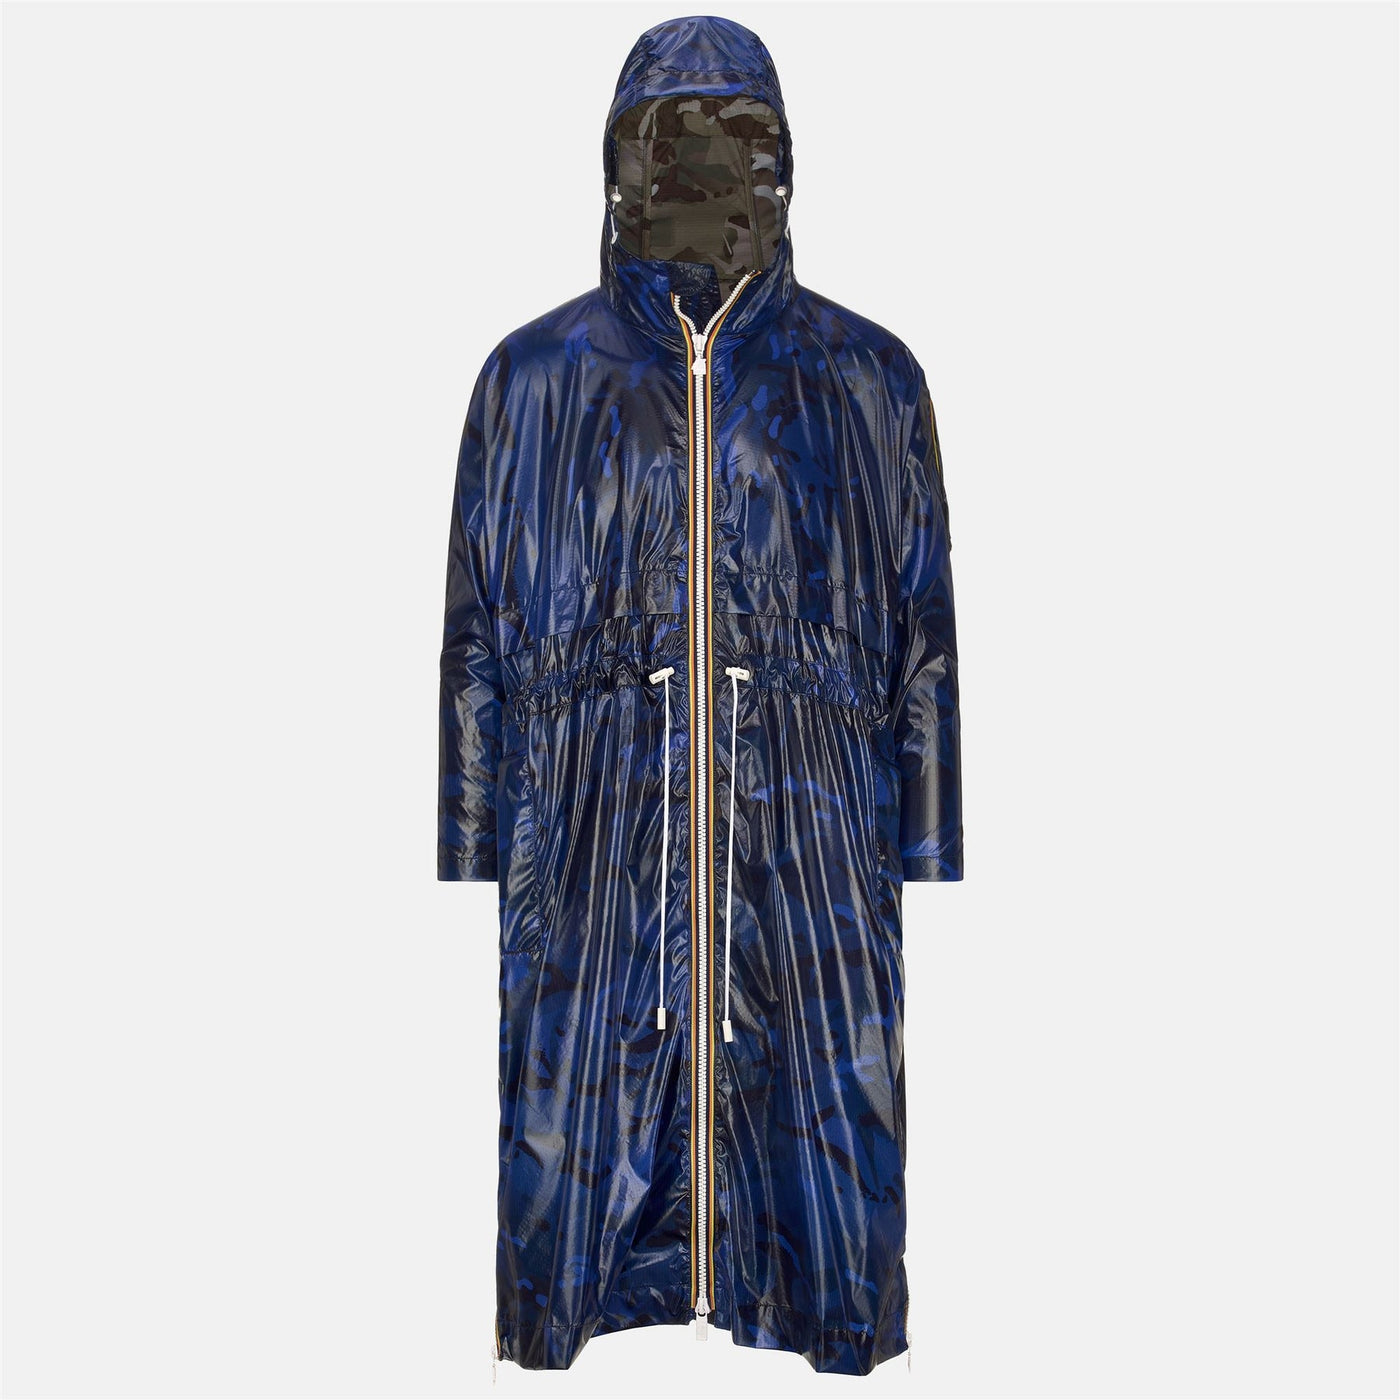 UNEL CAMOU - Jacket - Polyamide - Unisex - Blue Camouflage